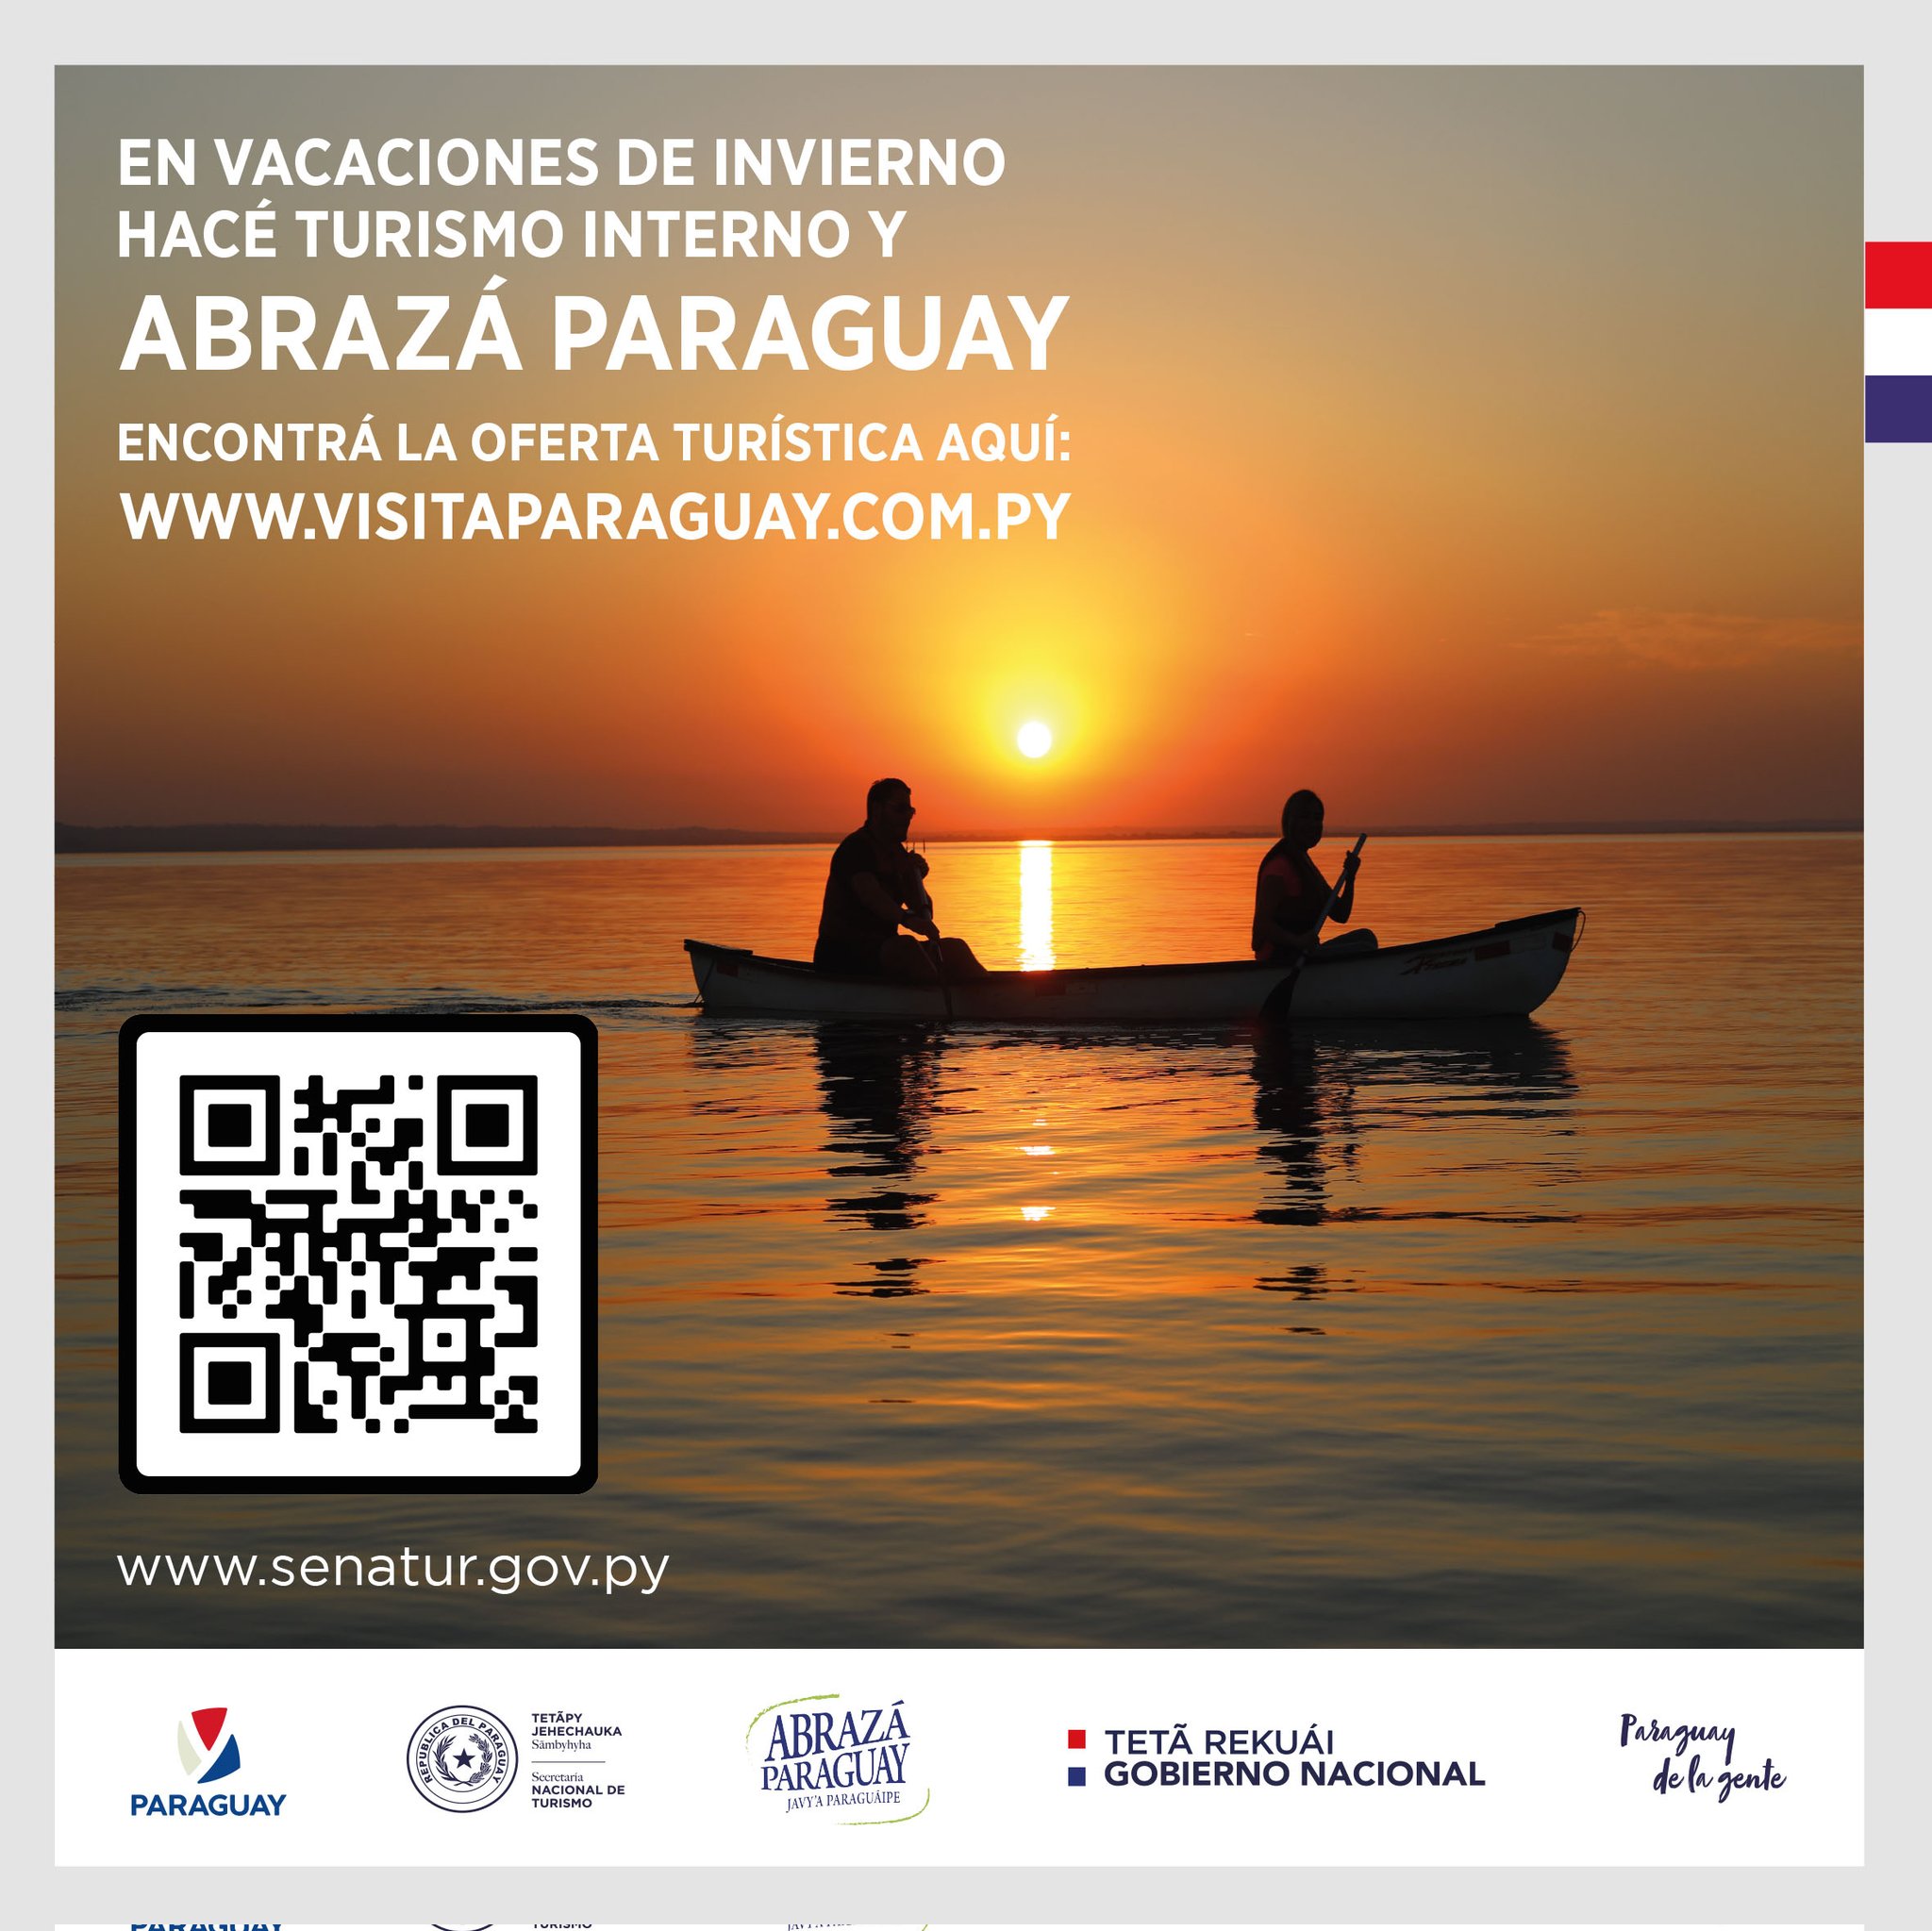 Senatur propone “Abrazar Paraguay” durante las vacaciones de invierno.